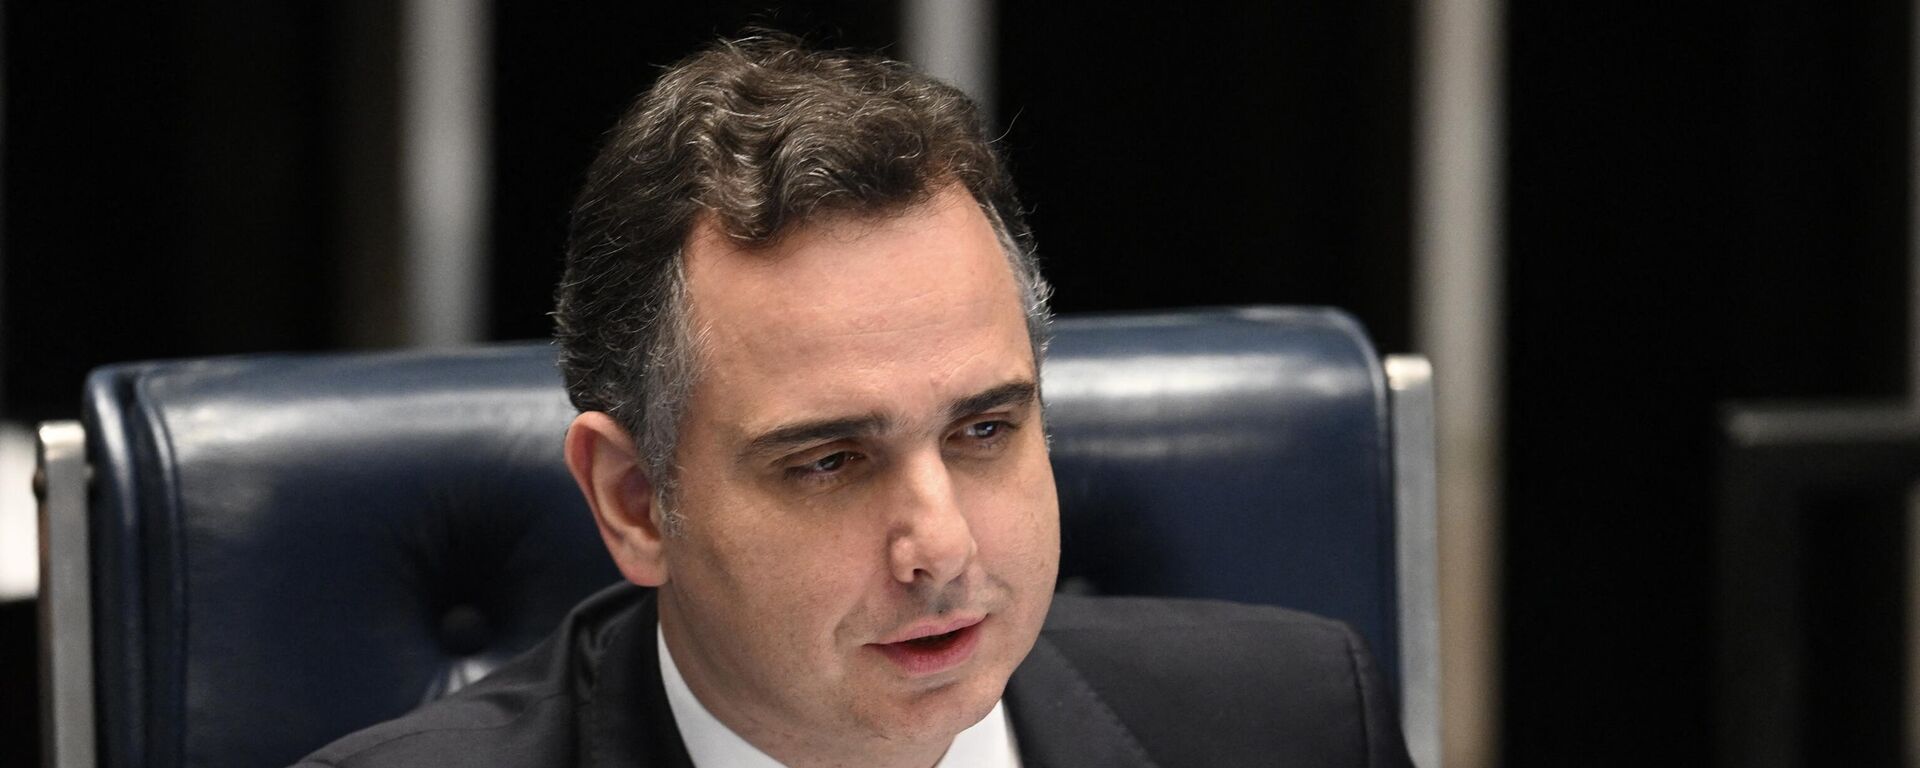 O presidente do Senado Federal, Rodrigo Pacheco, gesticula durante a votação da PEC no plenário do Senado, em Brasília, em 7 de dezembro de 2022 - Sputnik Brasil, 1920, 20.04.2023